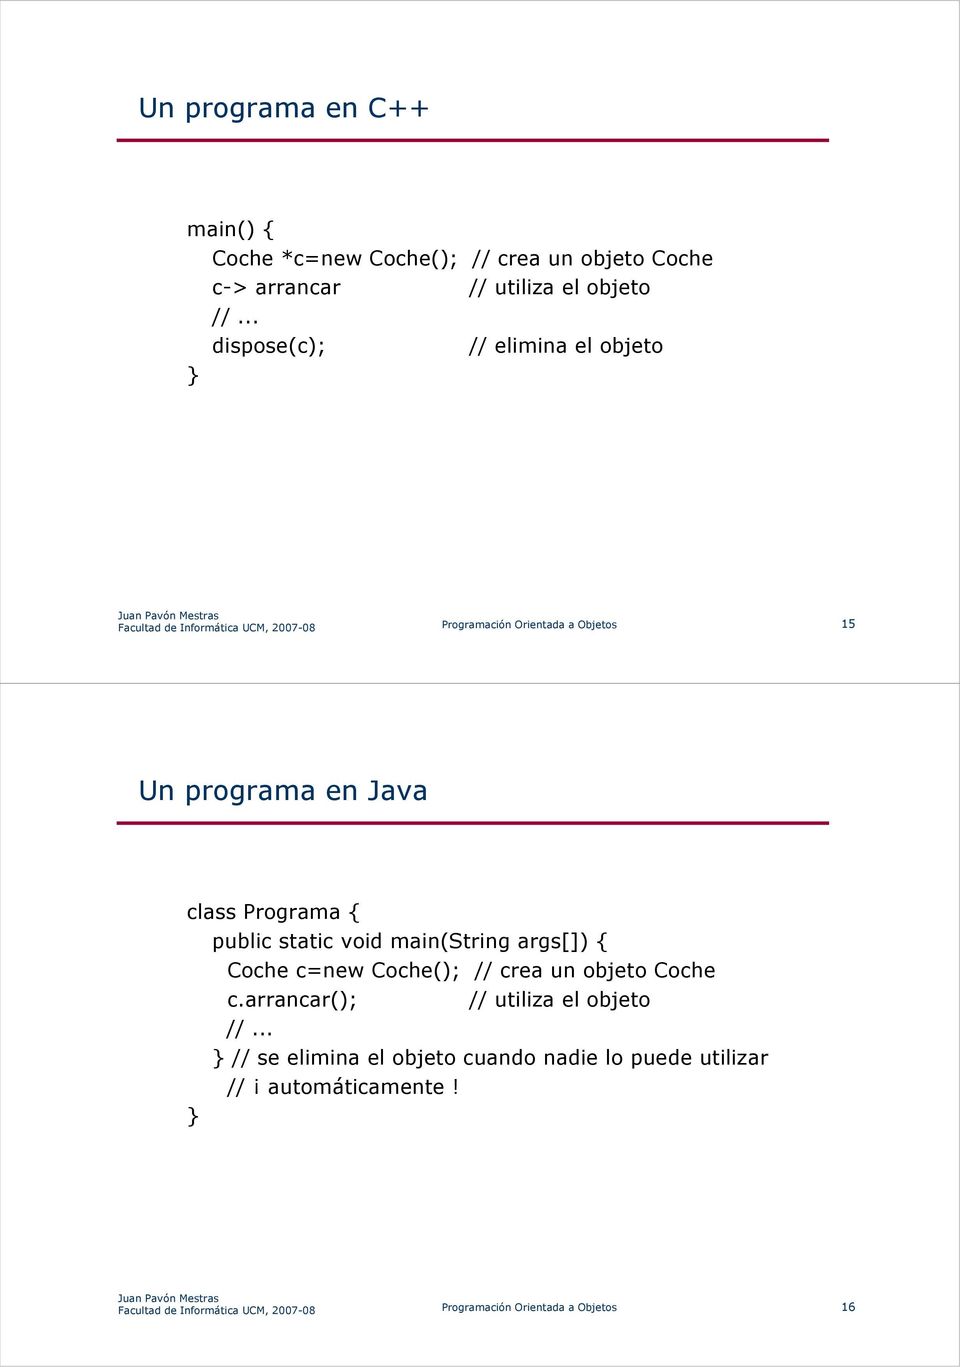 programa en Java class Programa { public static void main(string args[]) { } Coche c=new Coche(); // crea un objeto Coche c.